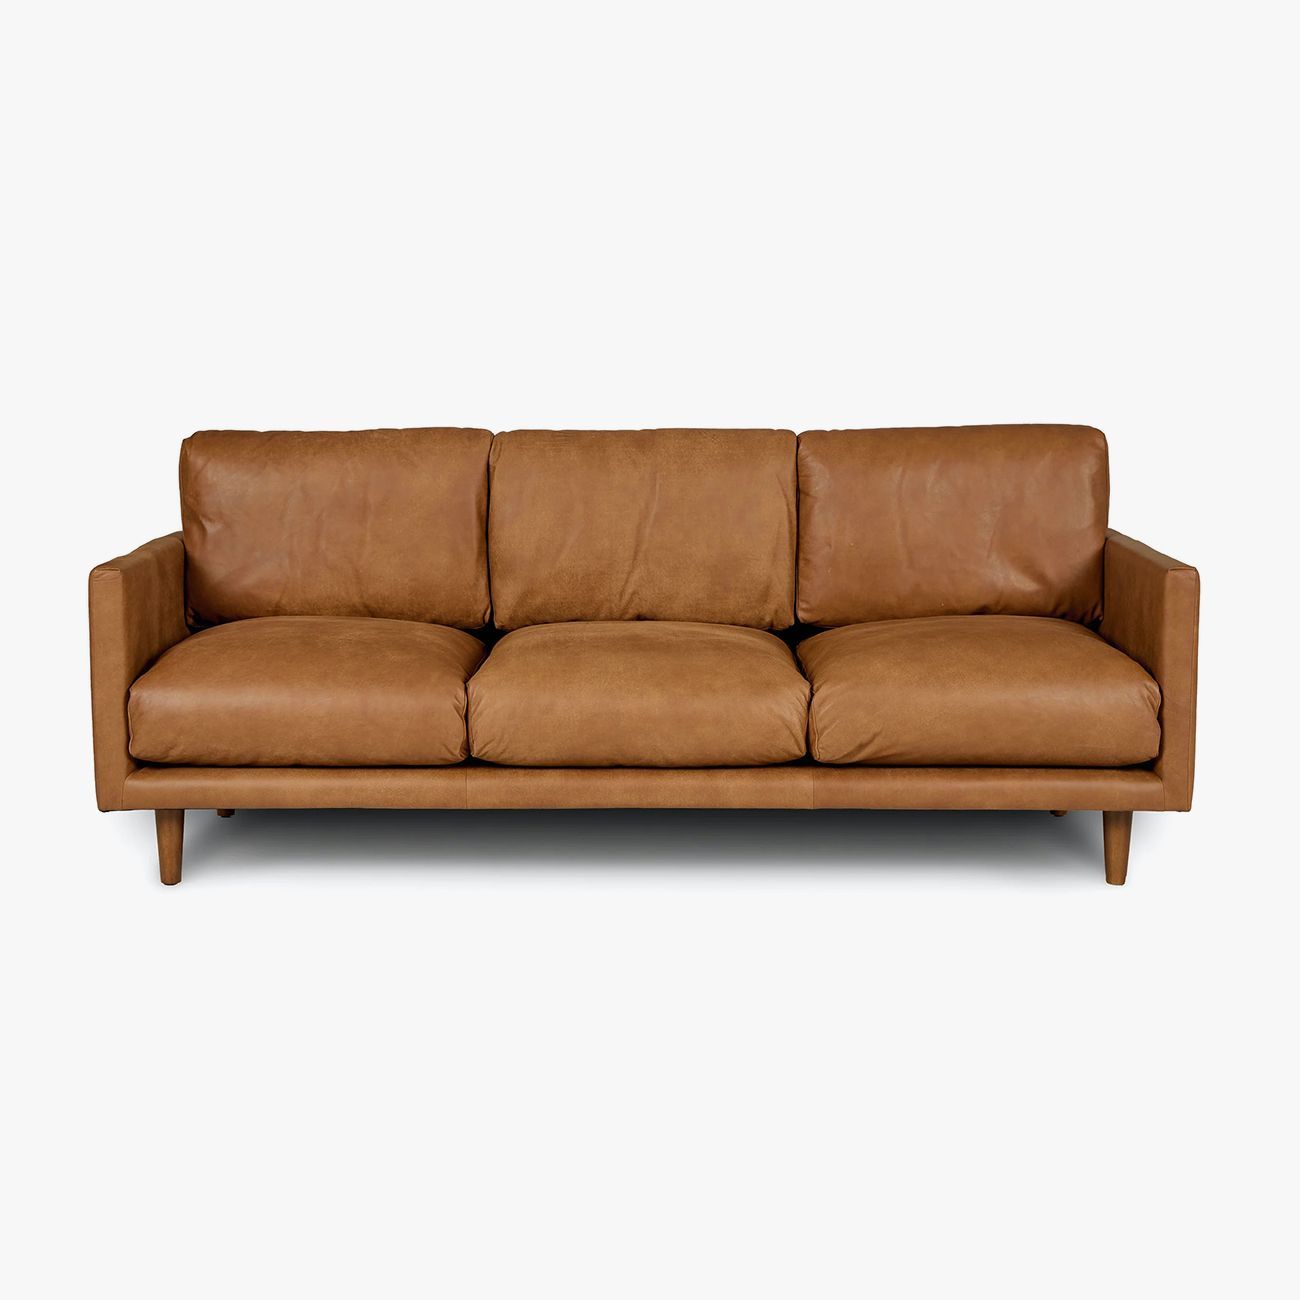 Minefelt Tilstand Moralsk uddannelse The 25 Best Sofa Brands for Any Home and Design